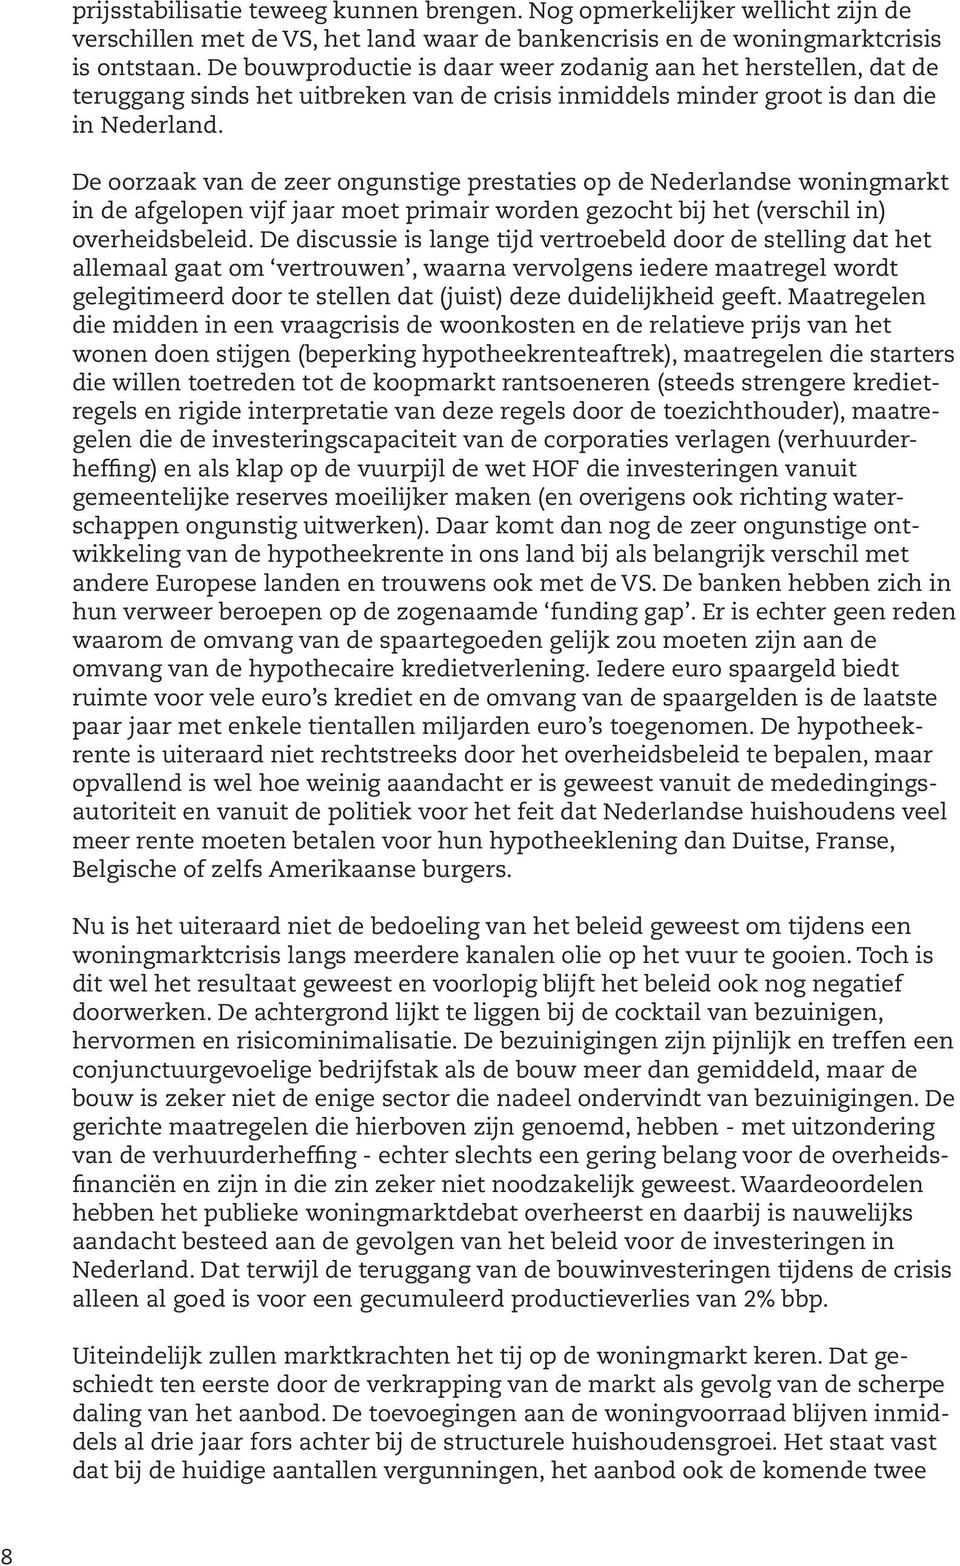 De oorzaak van de zeer ongunstige prestaties op de Nederlandse woningmarkt in de afgelopen vijf jaar moet primair worden gezocht bij het (verschil in) overheidsbeleid.